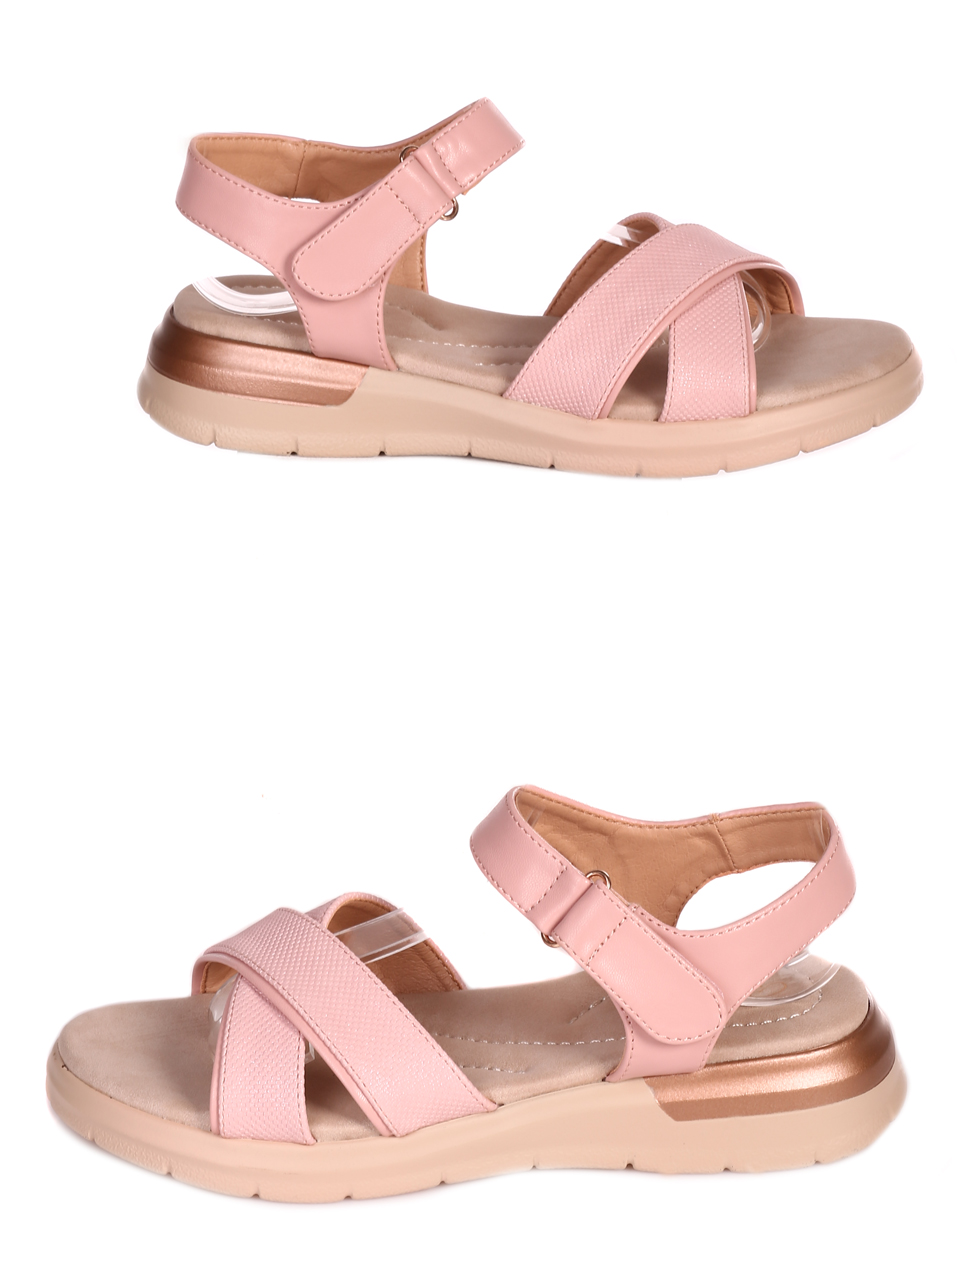 Ежедневни дамски комфортни сандали в розово 4H-23119 pink